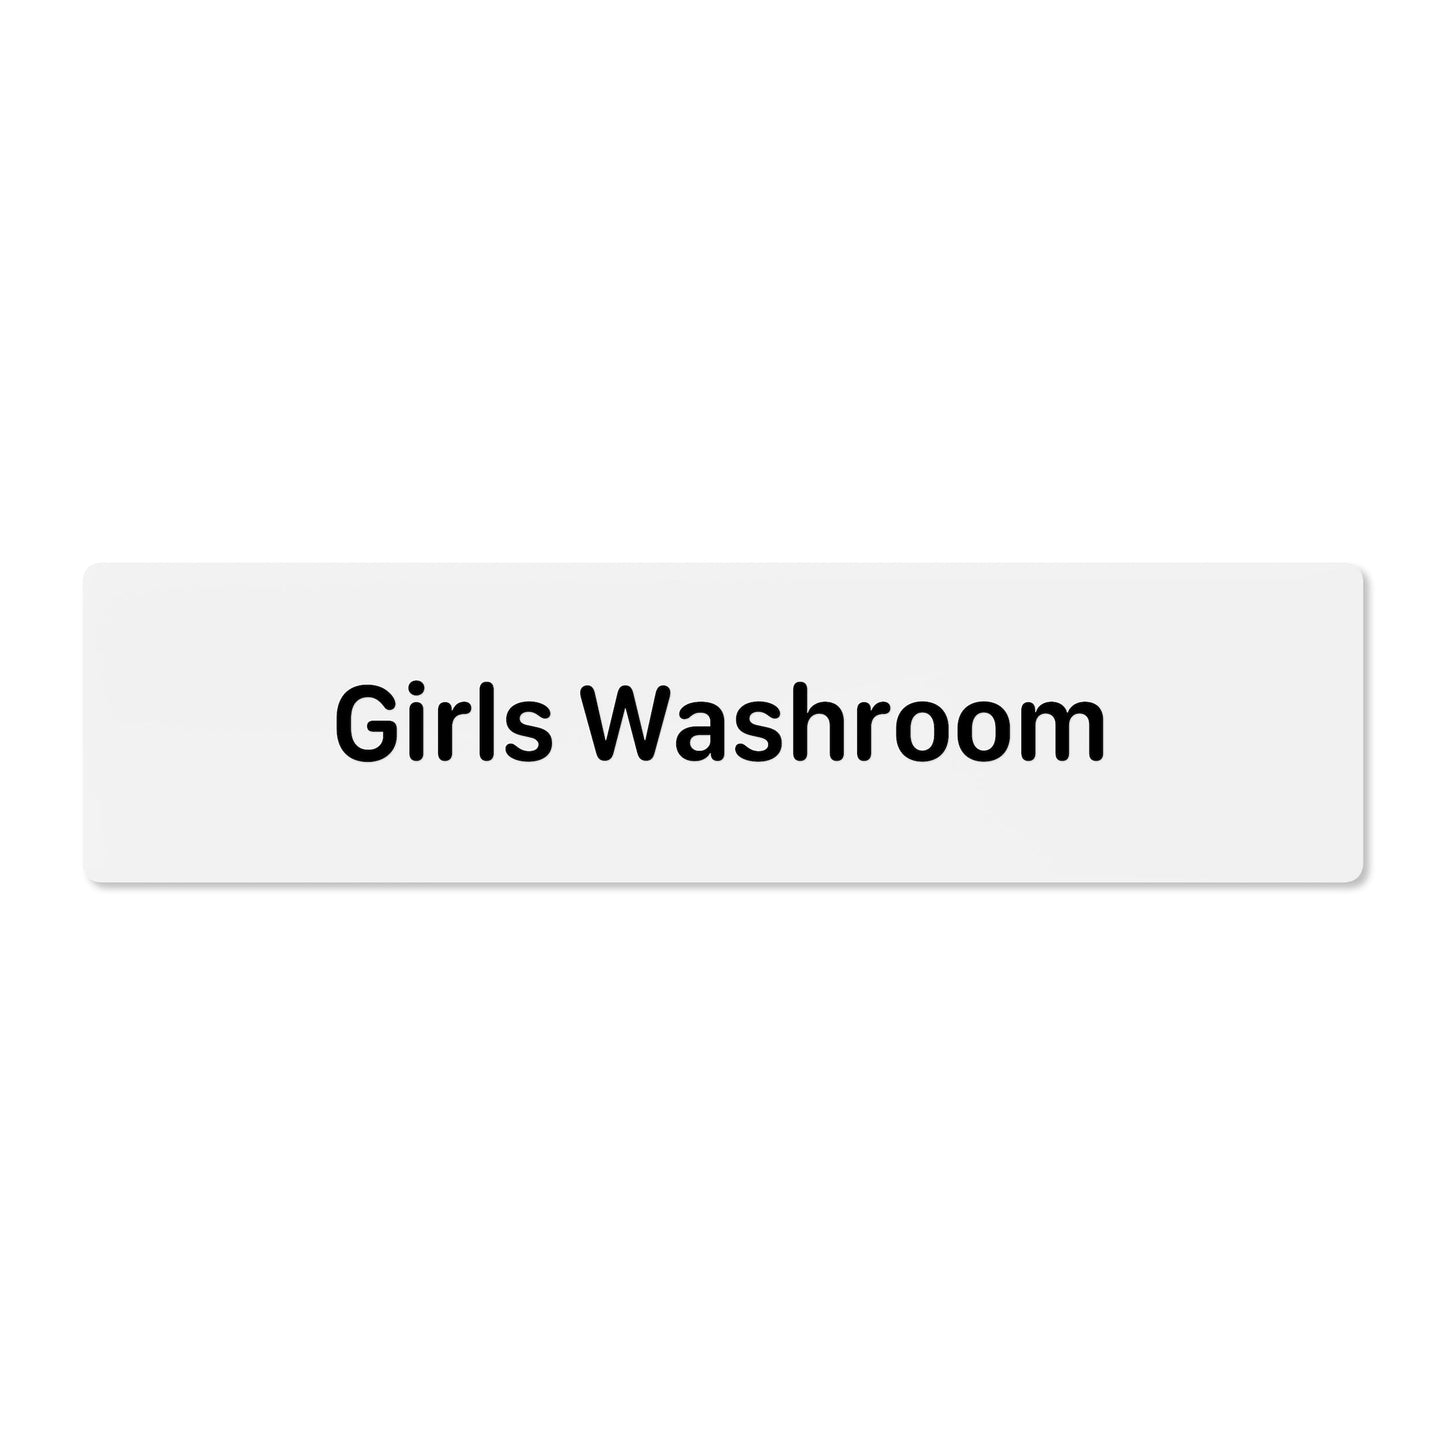 Girls Washroom